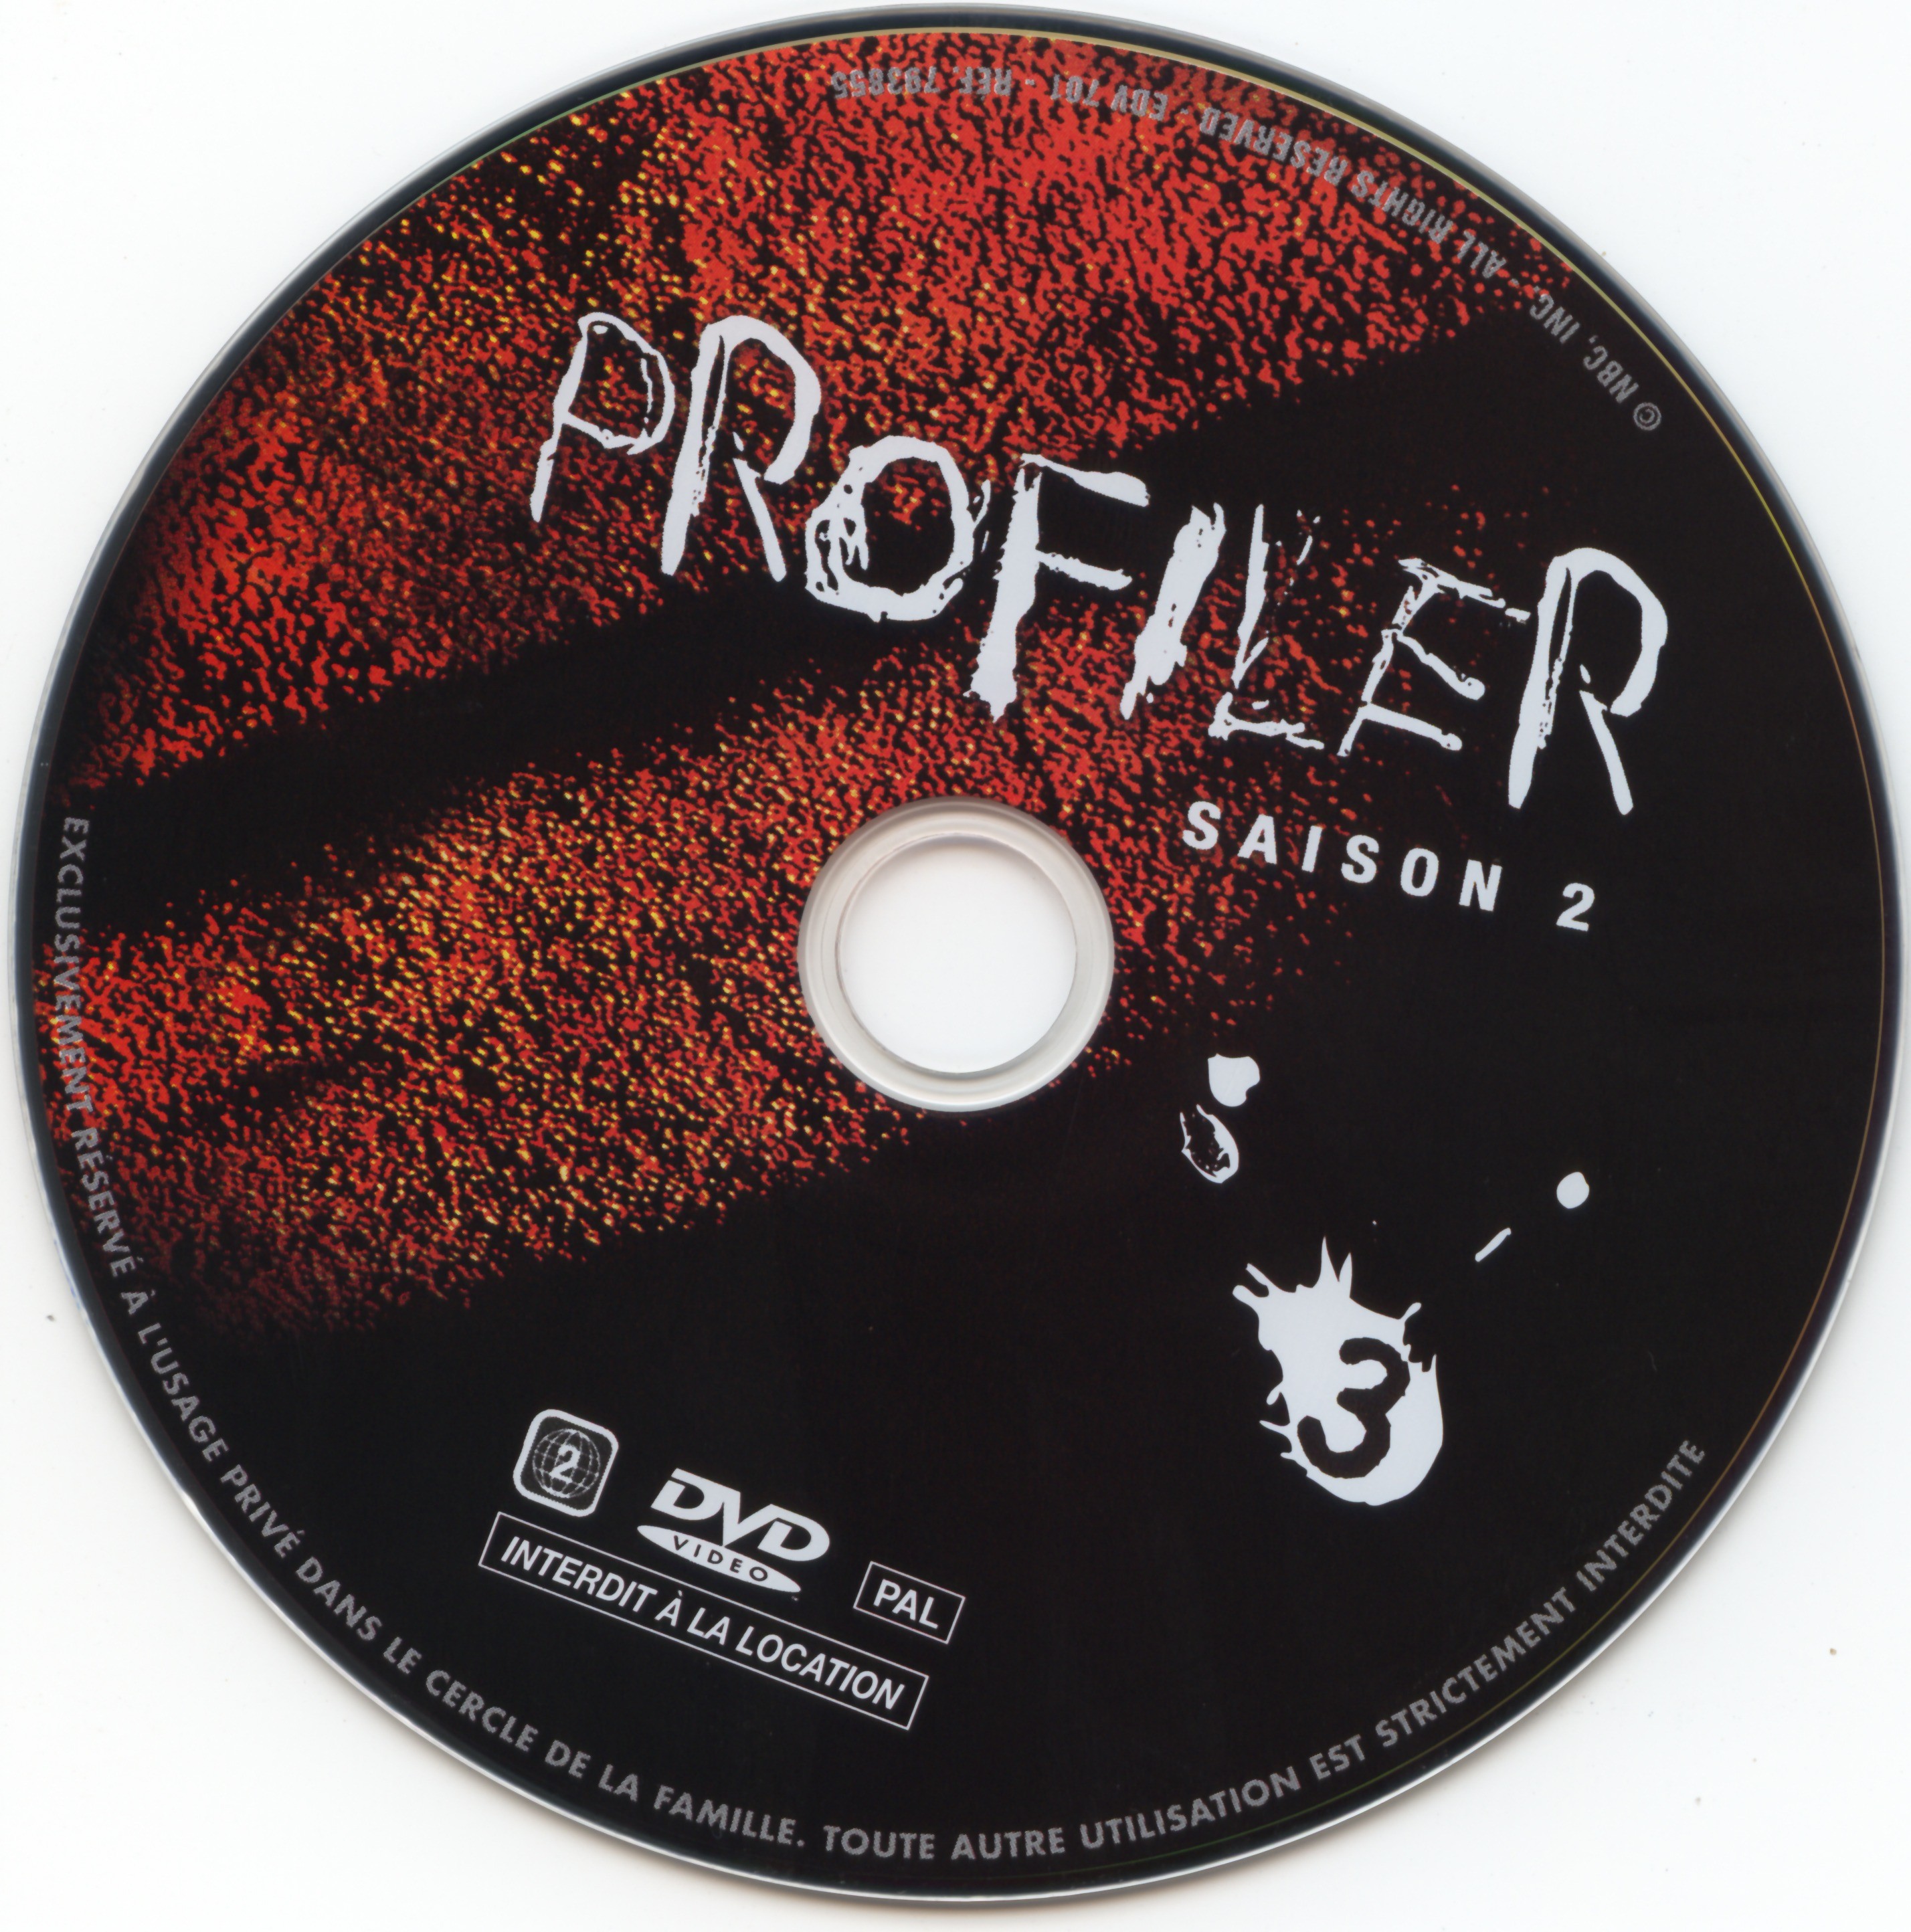 Profiler saison 2 DVD 3